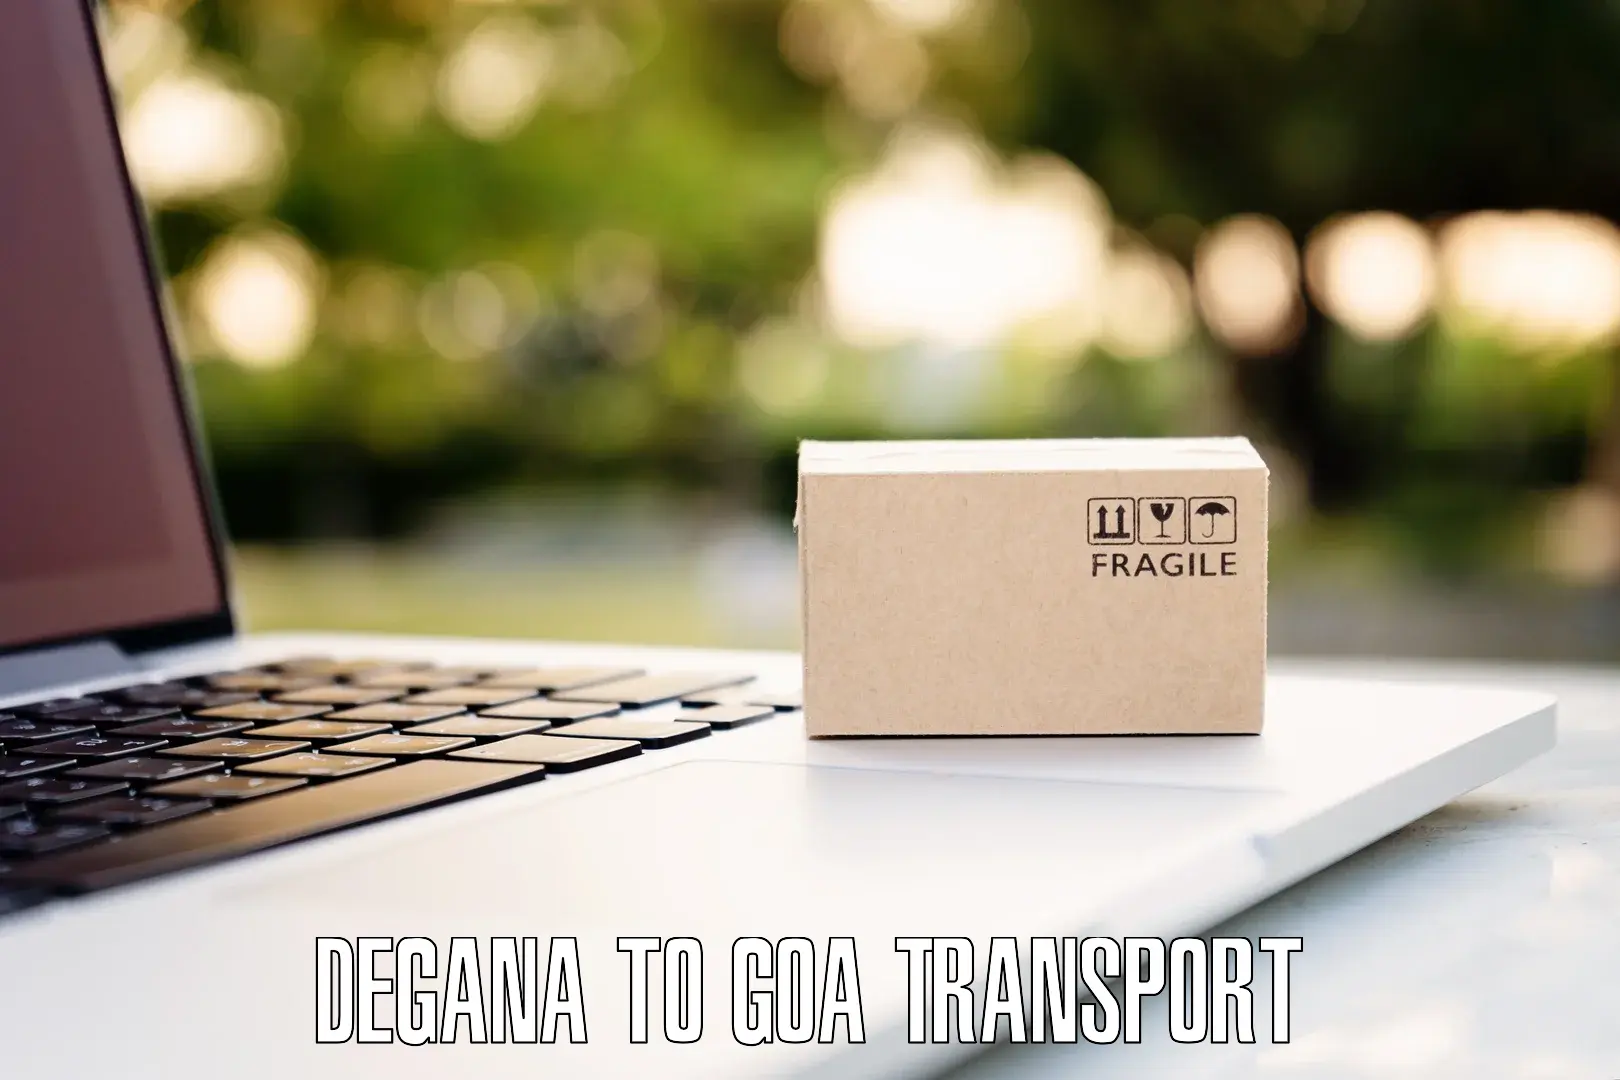 Parcel transport services Degana to Mormugao Port